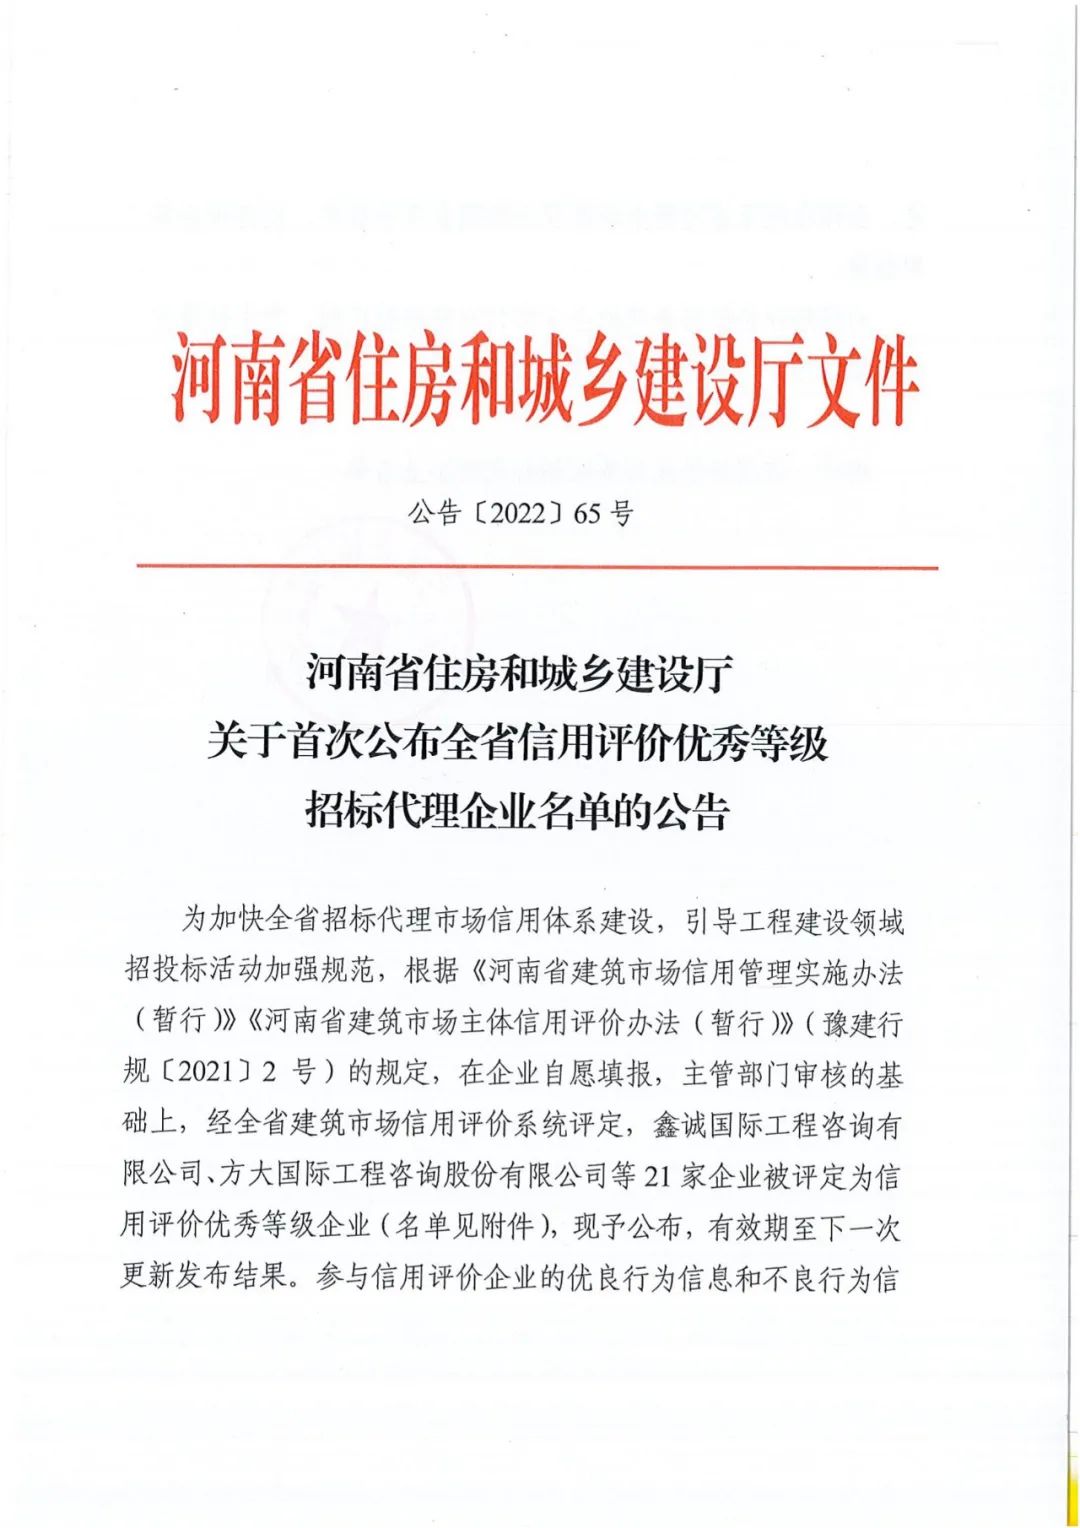 熱烈祝賀我公司獲得河南省住建廳評定“全省信用評價優秀等級招標代理“企業稱號。